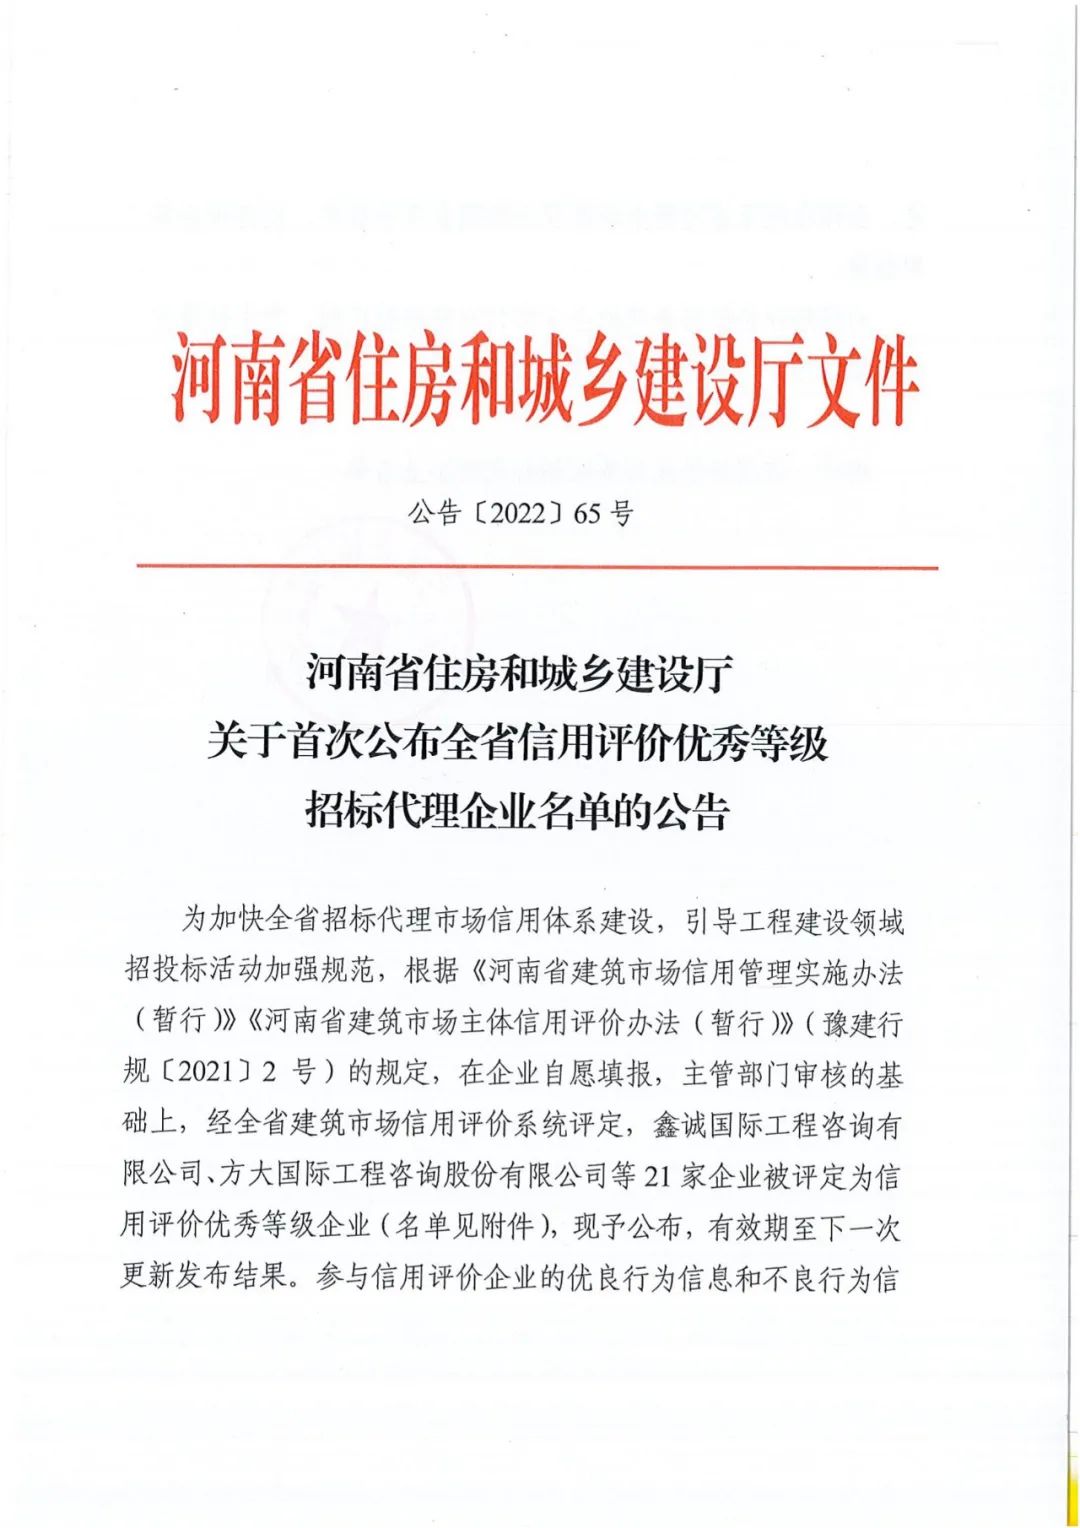 熱烈祝賀我公司獲得河南省住建廳評定“全省信用評價優秀等級招標代理“企業稱號。